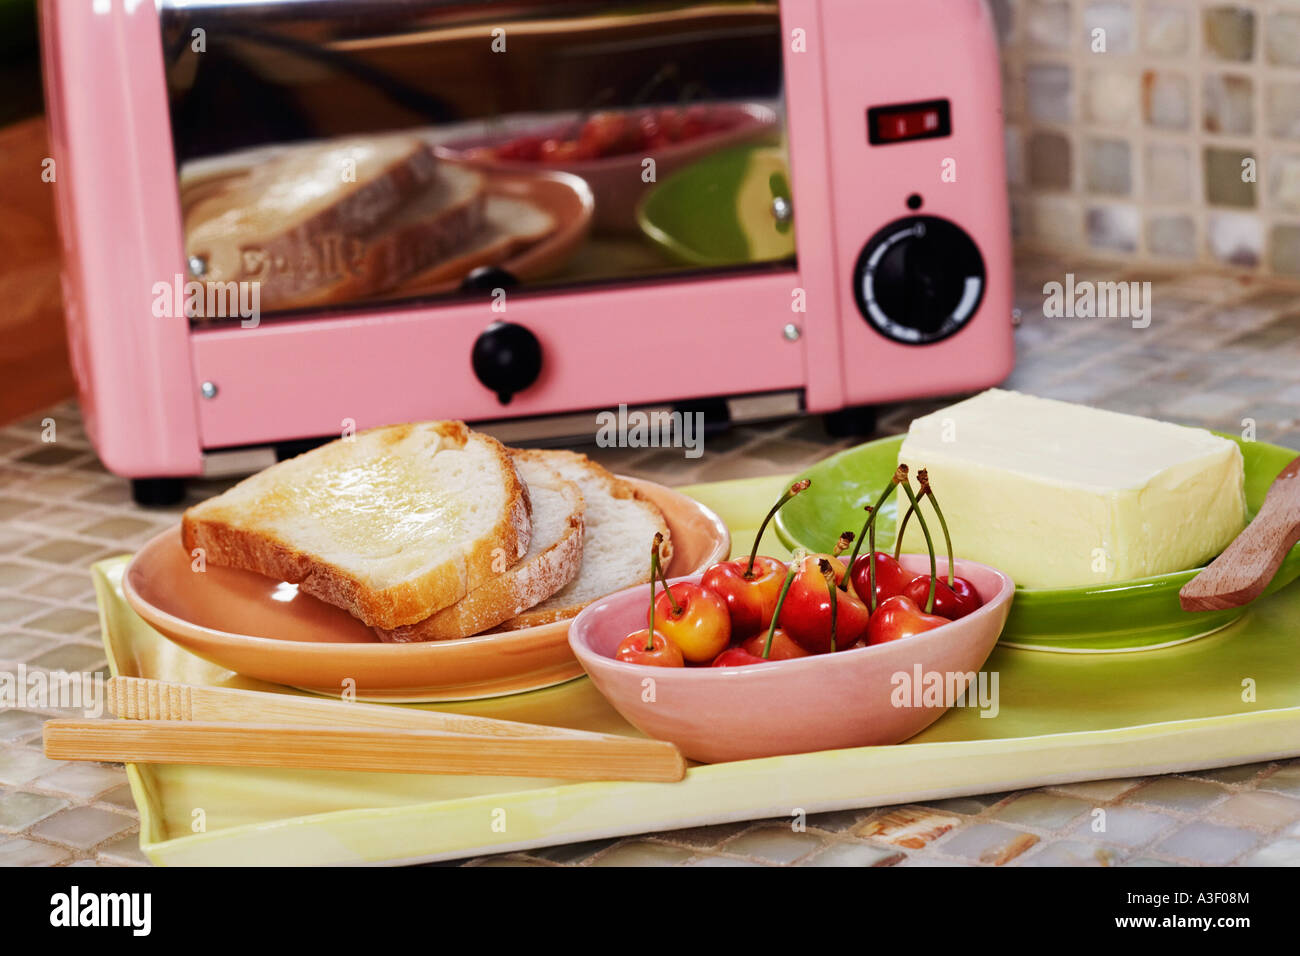 Nahaufnahme von Kirschen mit Brot und Butter in eine Schale vor einer  Mikrowelle Stockfotografie - Alamy